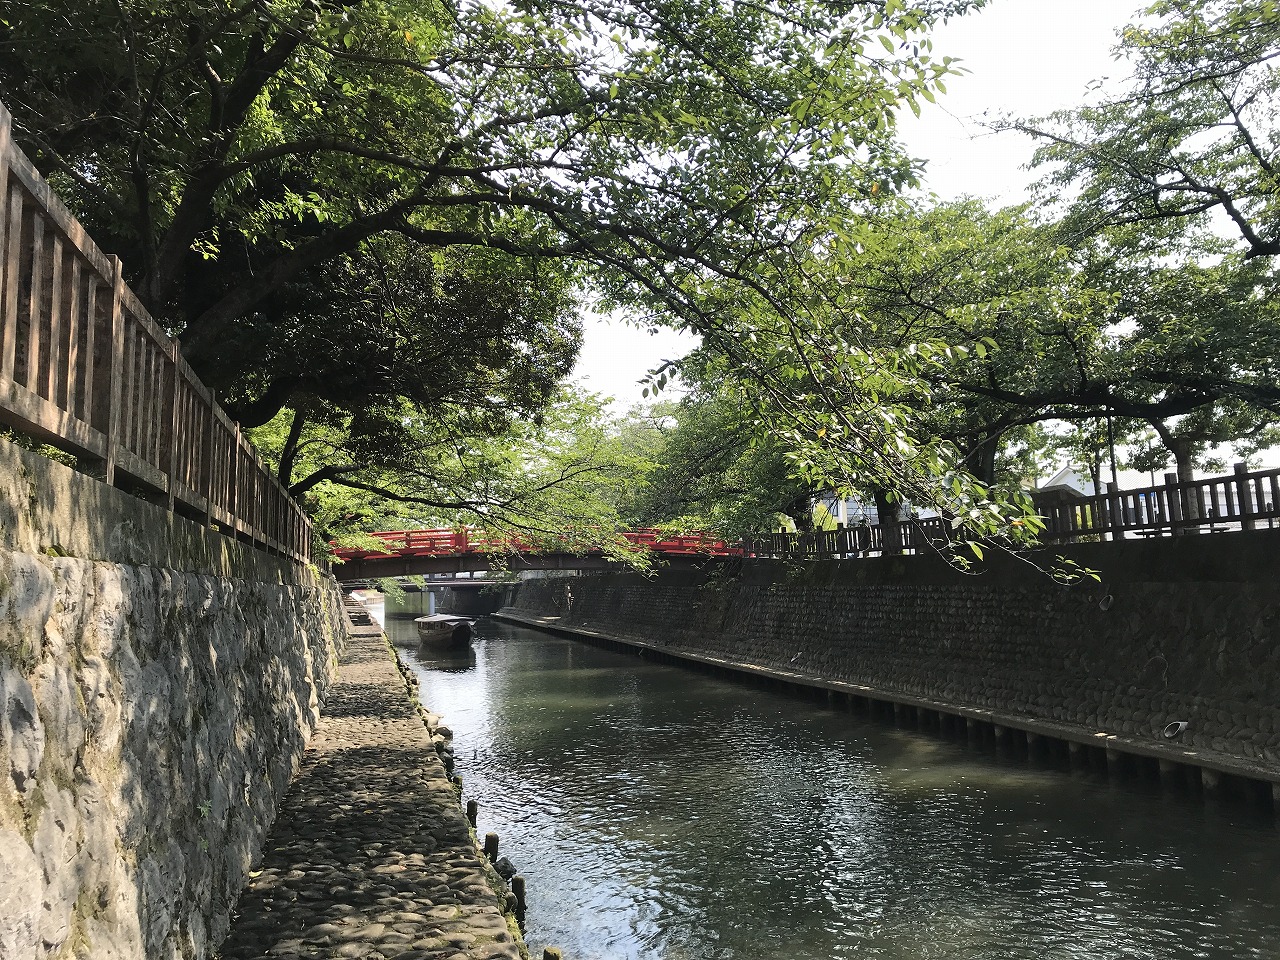 松尾芭蕉・奥の細道むすびの地としても有名な大垣市。この思わず一句詠みたくなるような（？）閑静な景観が、市の中心部というのが驚きだ。